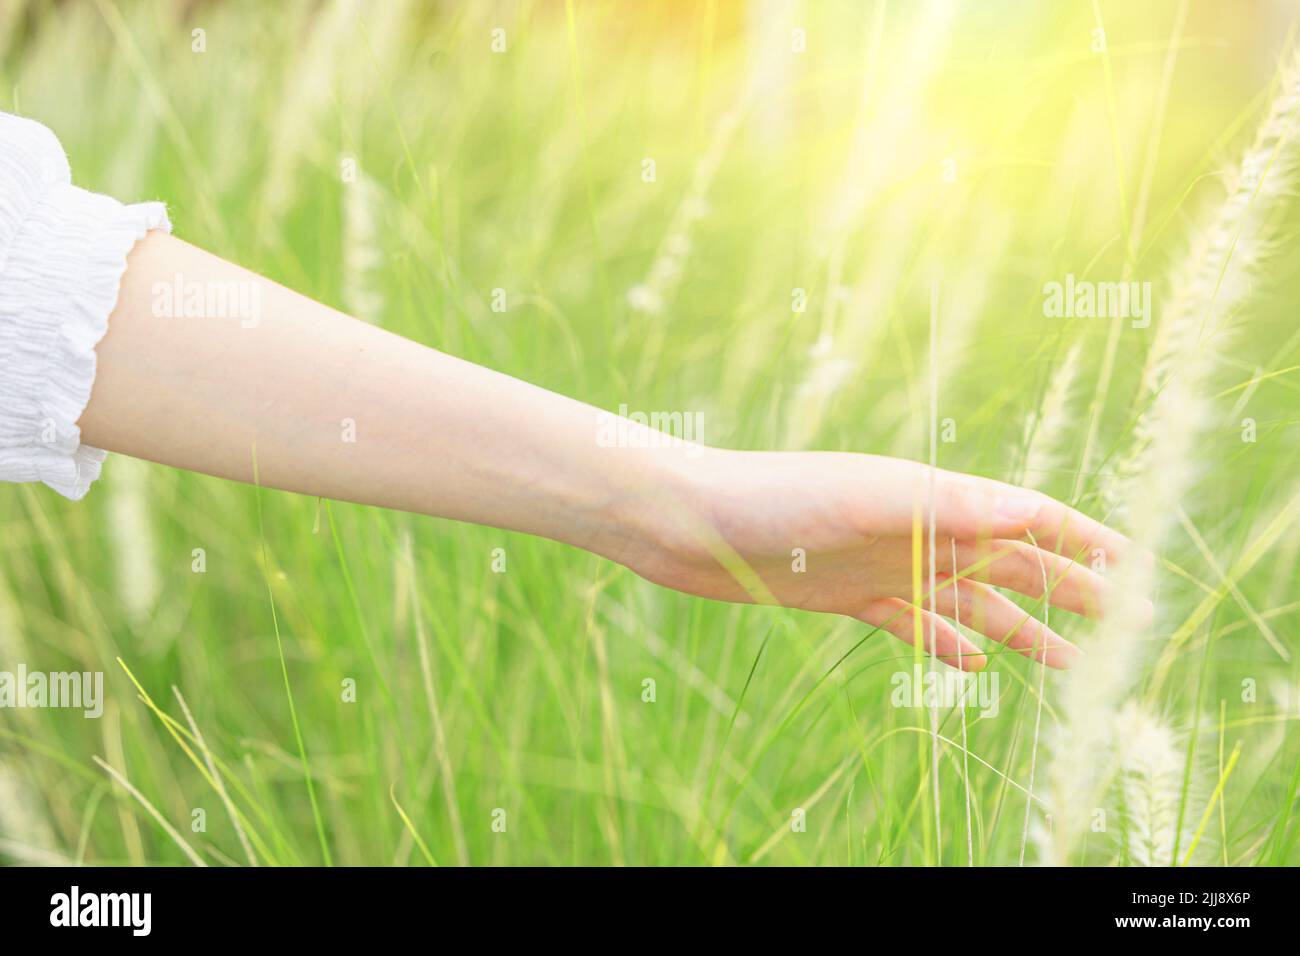 Schönheit Frau Hand berühren grünen Gras Blumenfeld für Freiheit Glück entspannen mit der Natur Konzept Stockfoto